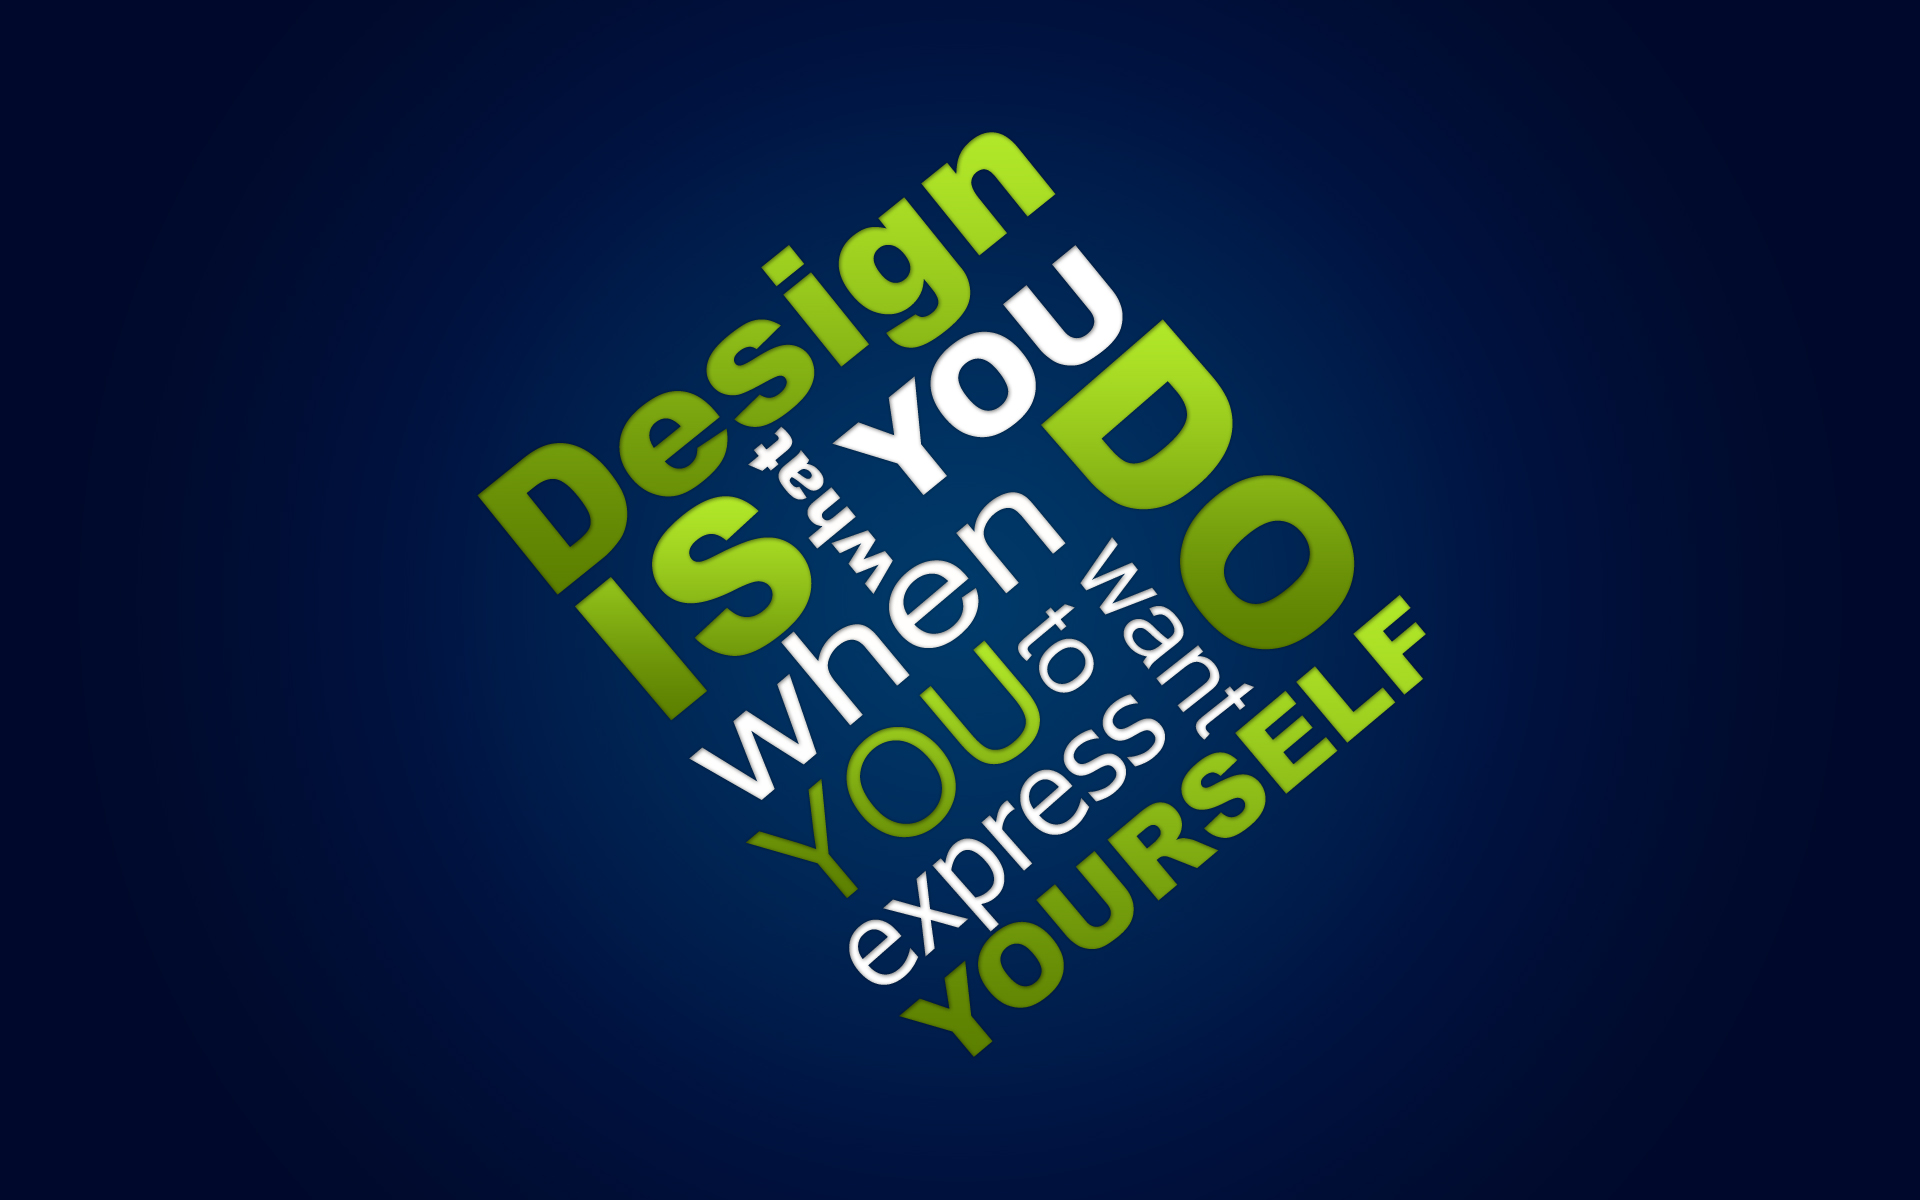 Design Yourself558713424 - Design Yourself - yourself, Feathers, Design